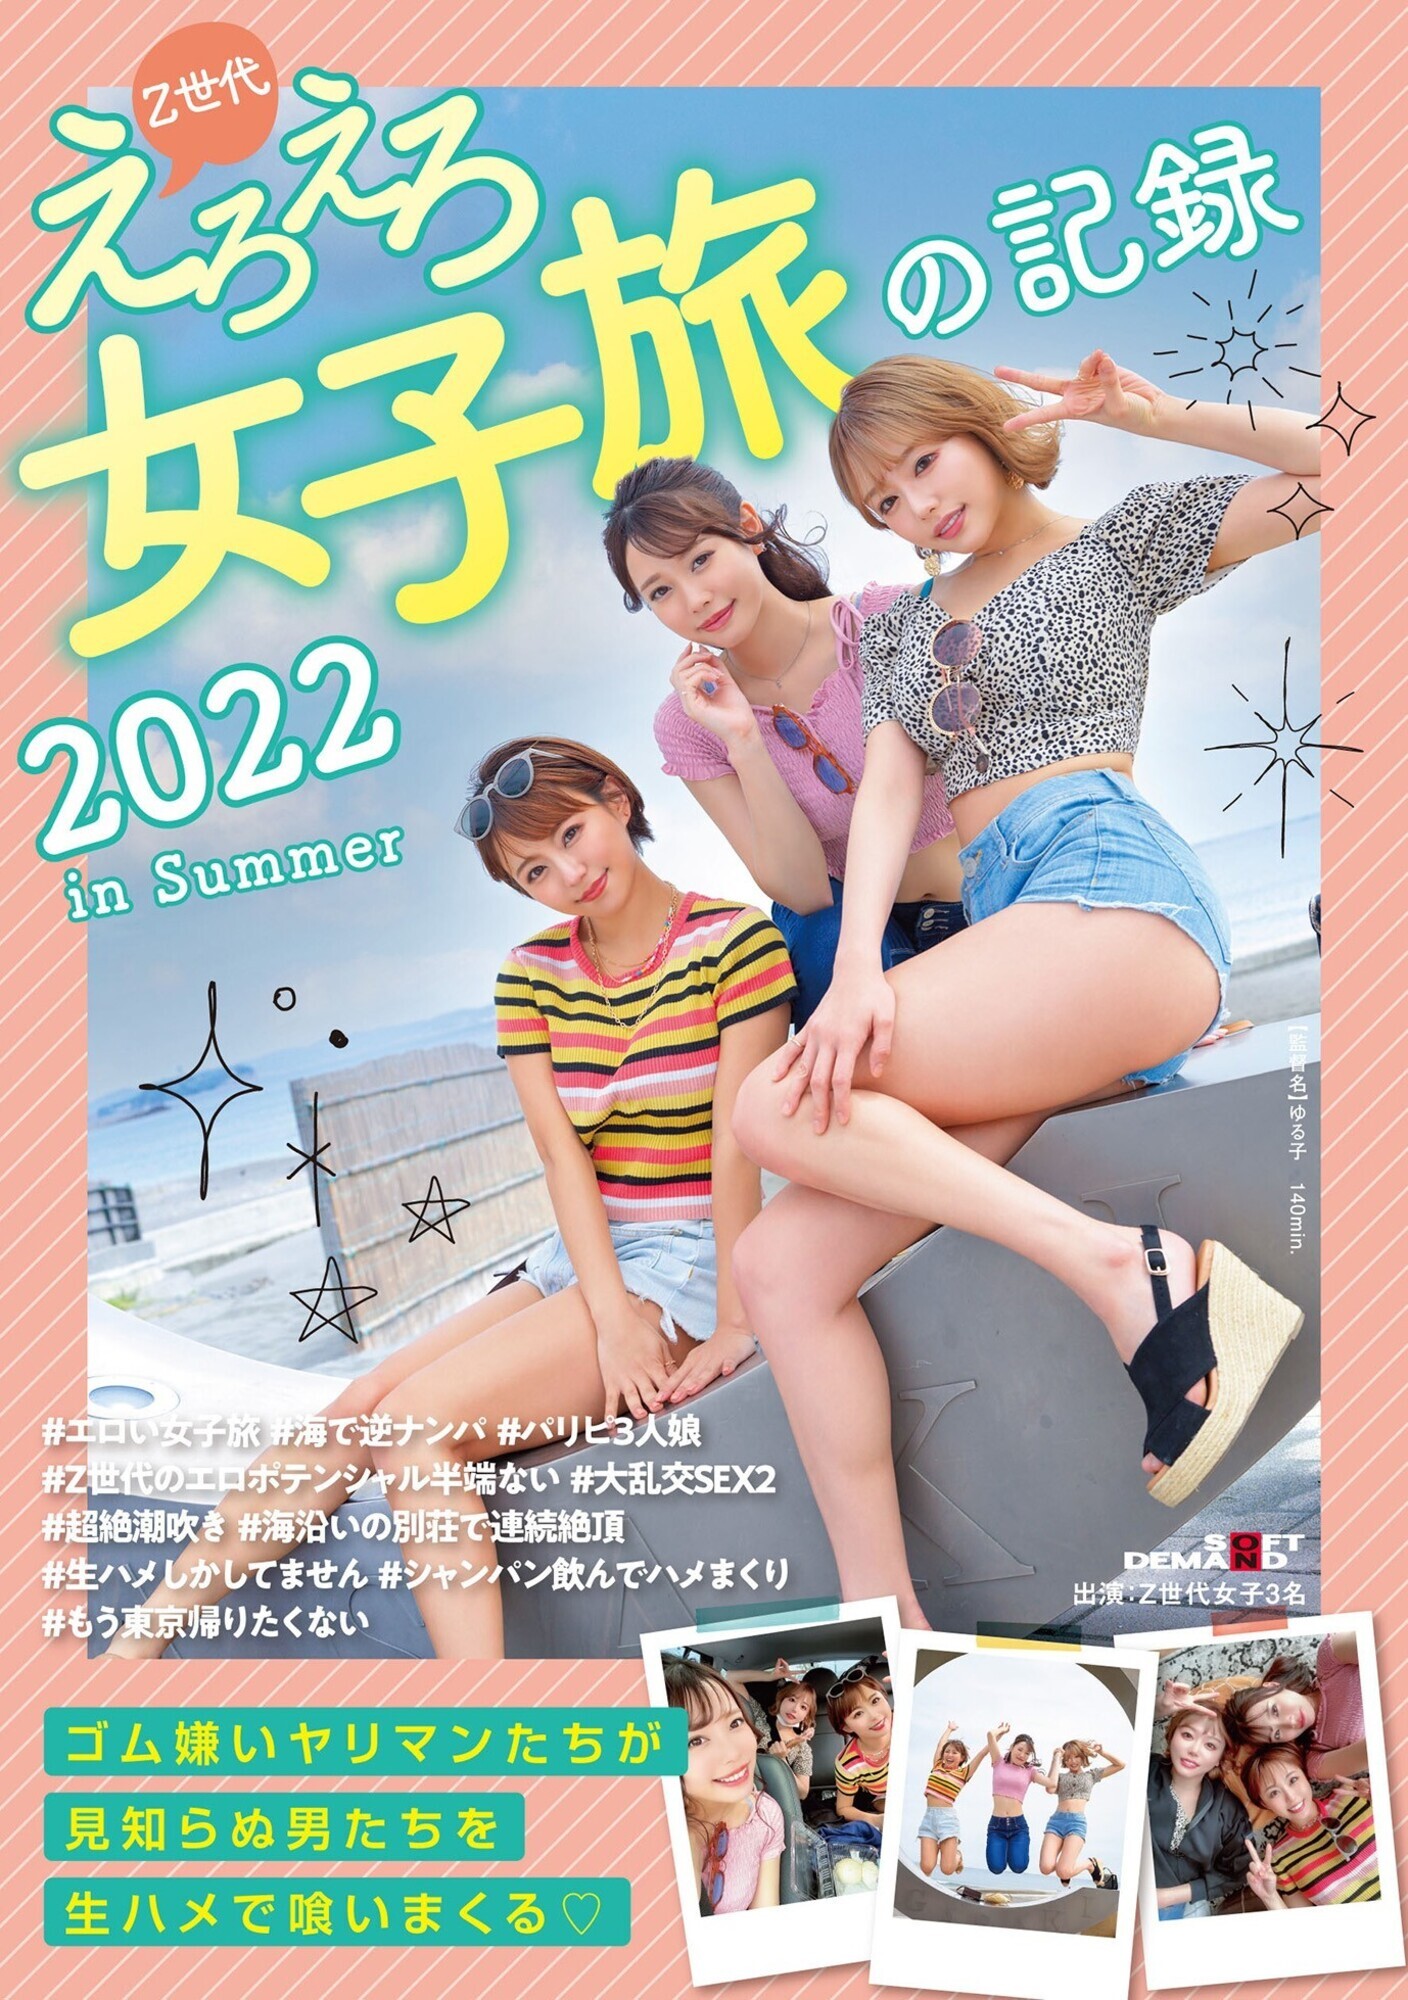 ★【乱交】Z世代えろえろ女子旅の記録 2022 in Summer